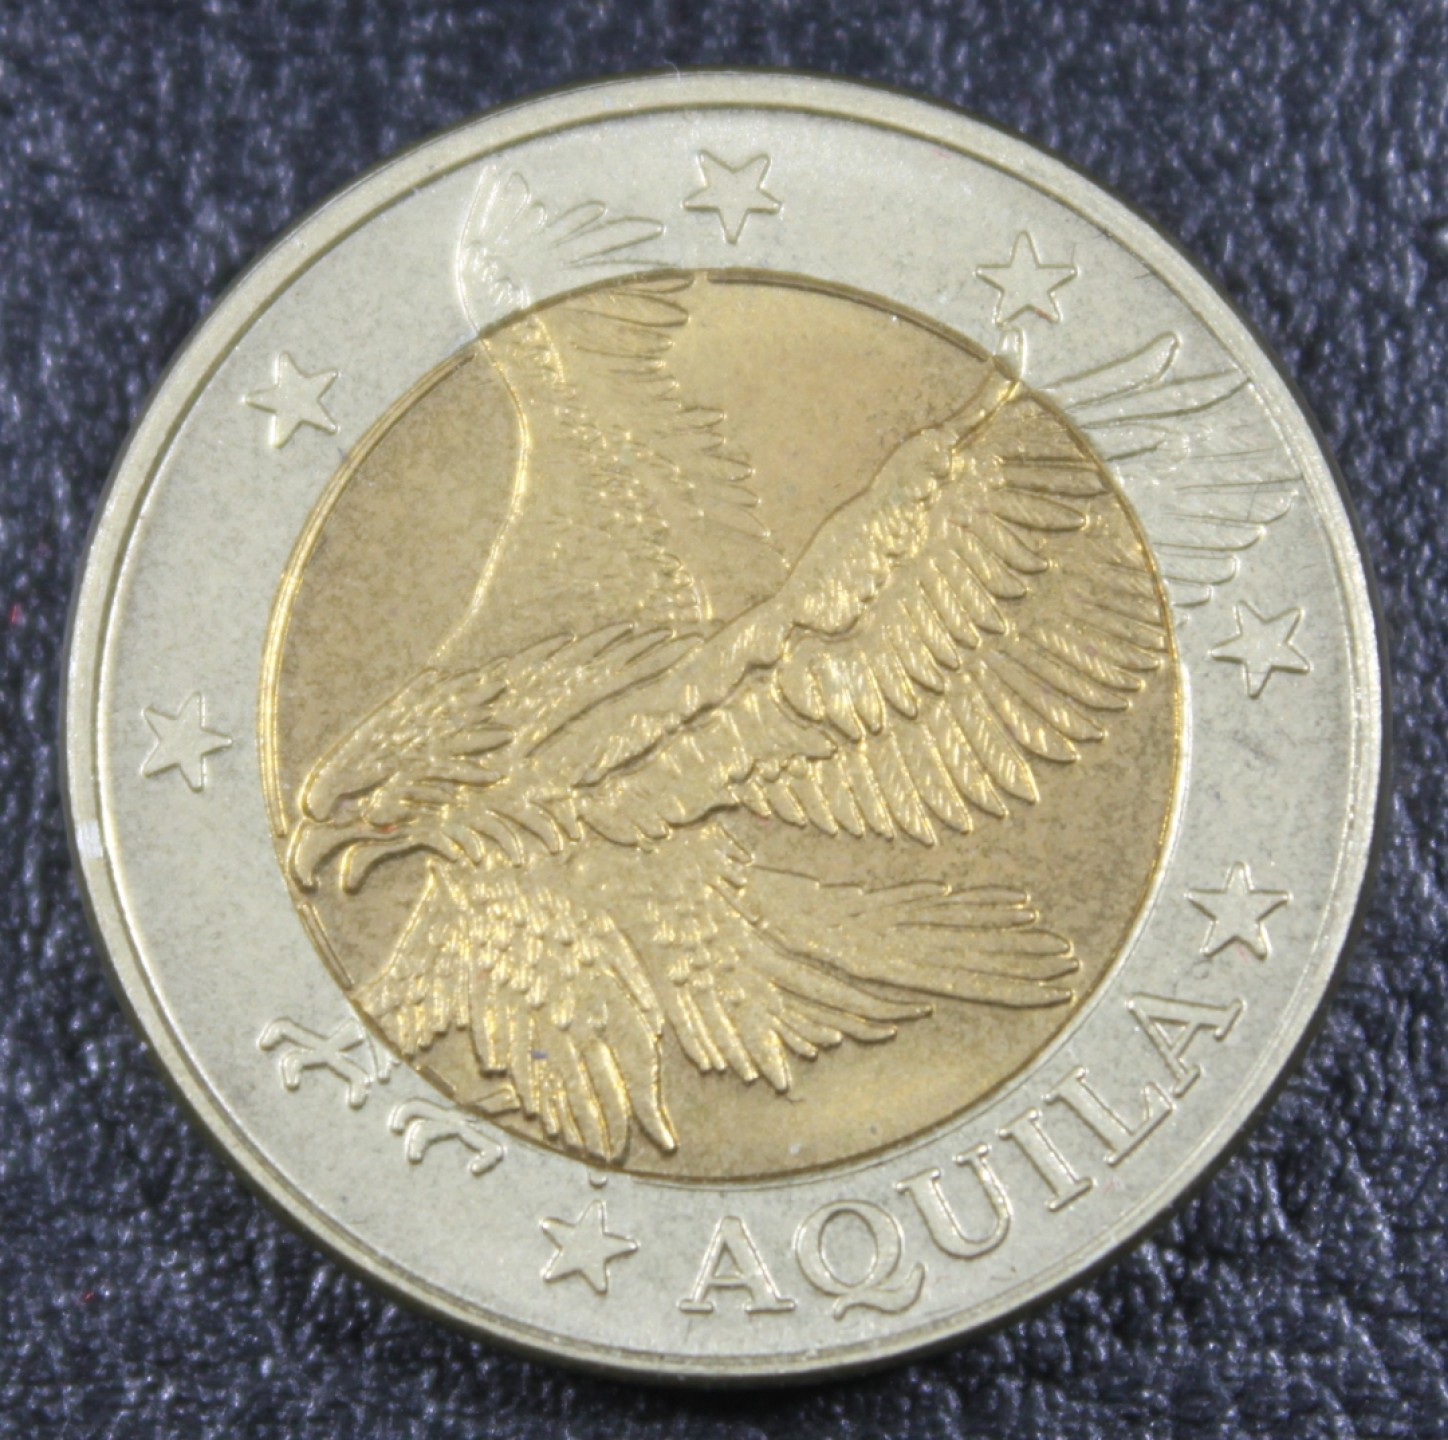 巴斯克收藏世界硬币第11期纪念币精选老银币全场包邮17/18/19号0元起三 